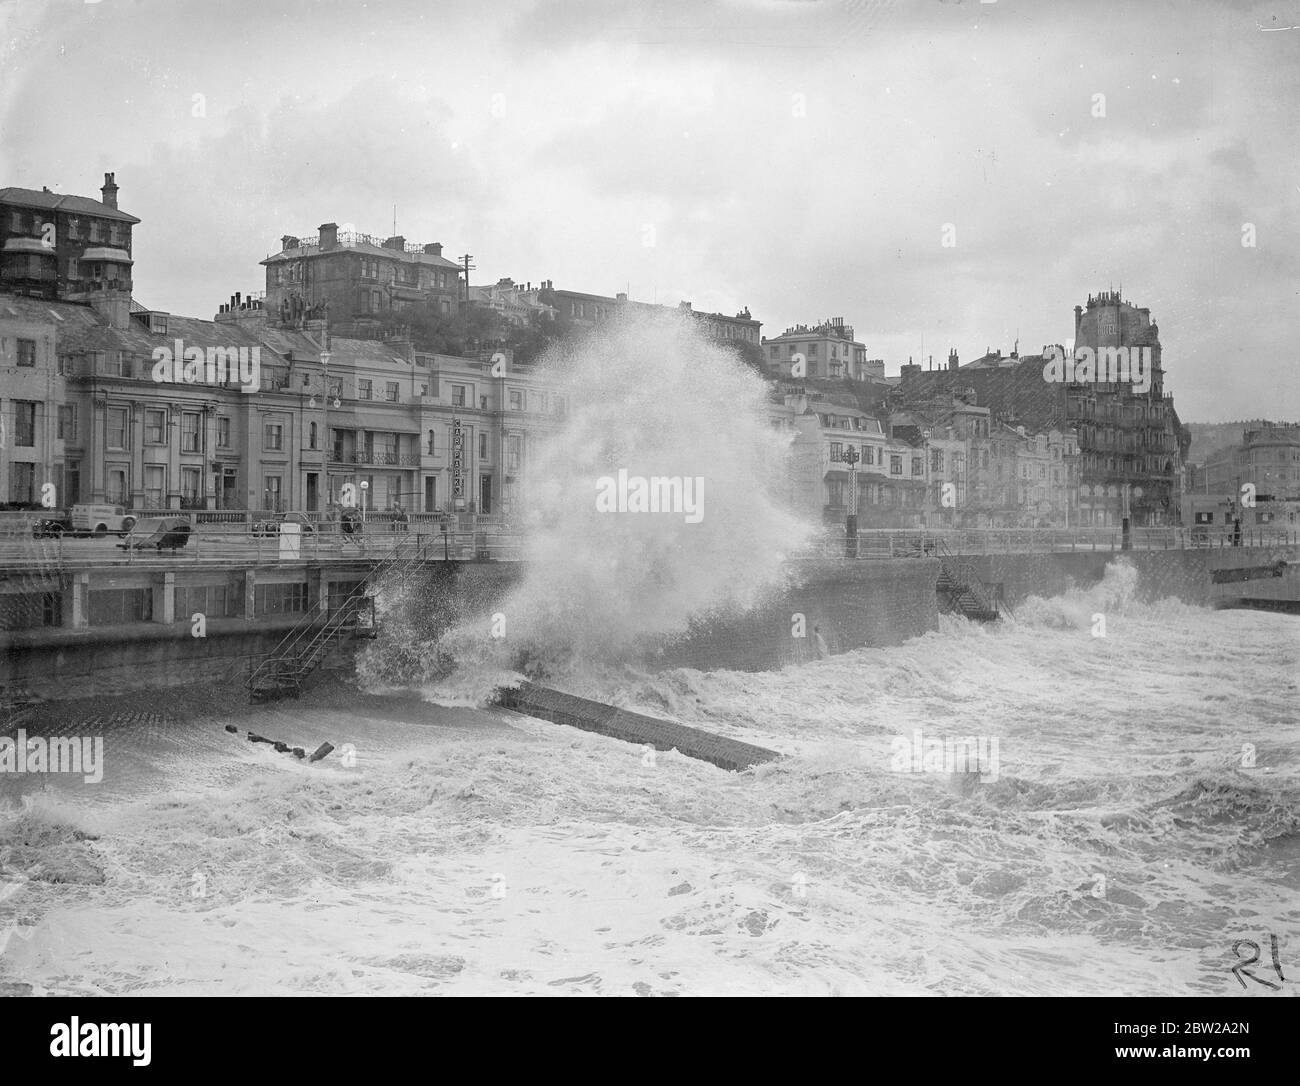 D'énormes vagues se brisèrent sur le front à Hastings pendant un Gale, qui ravaga la côte sud. Des spectacles de photos, des vagues géantes qui semblaient au-dessus des bâtiments se brisant sur le front à Hastings drame Gale. 23 octobre 1937 Banque D'Images